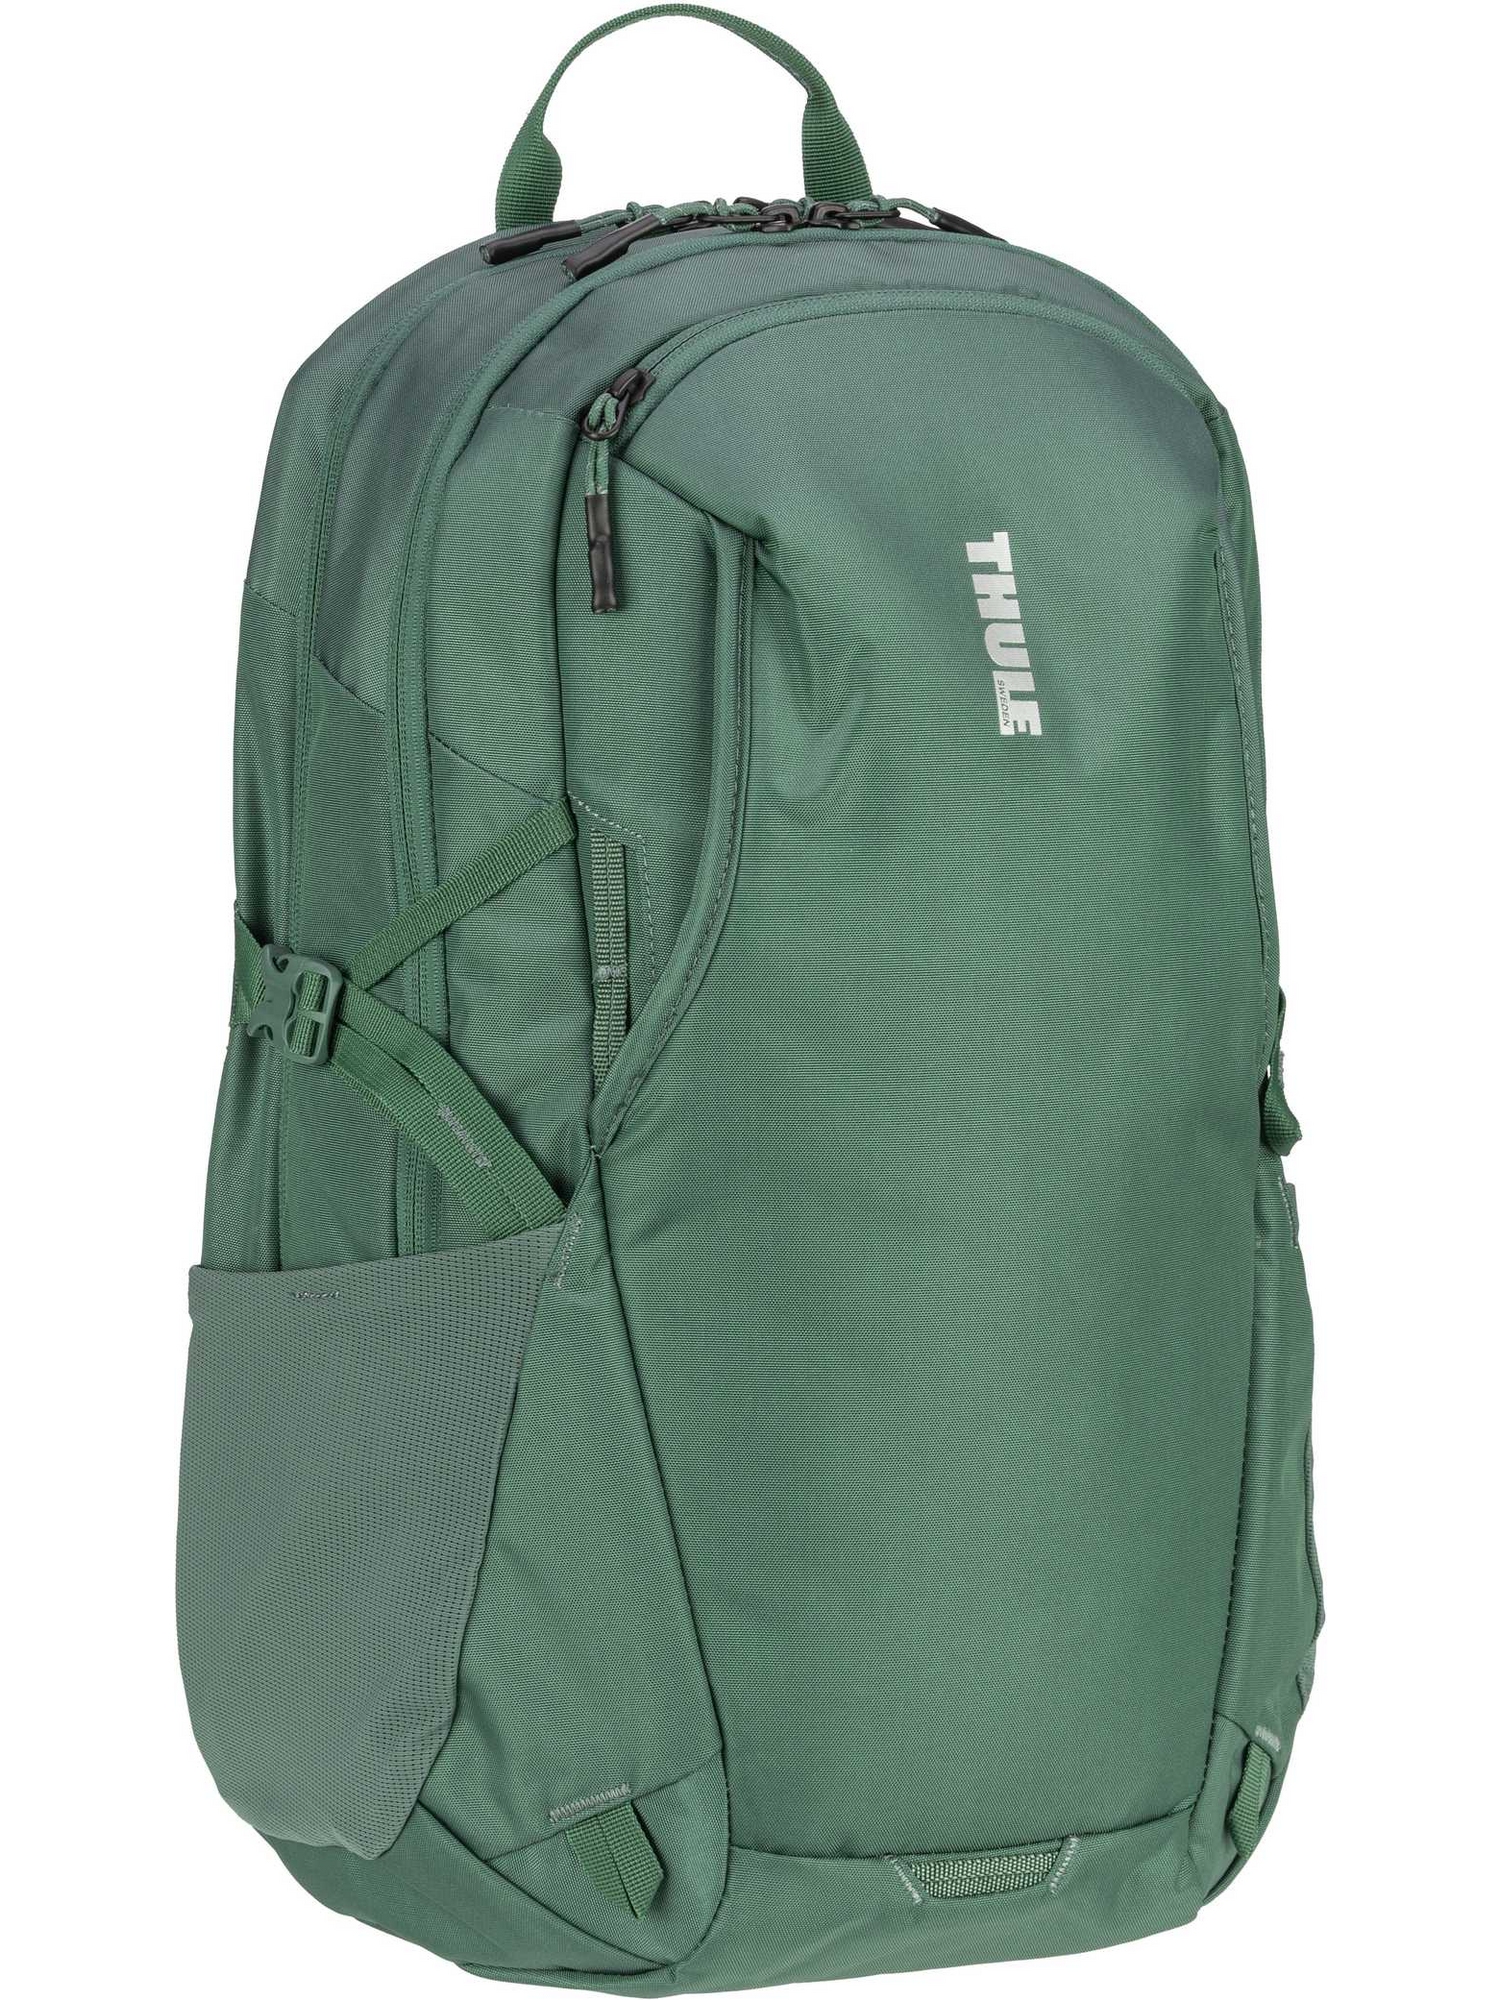 рюкзак thule backpack indago backpack 23l цвет dense teal Рюкзак Thule/Backpack EnRoute Backpack 23L, цвет Mallard Green